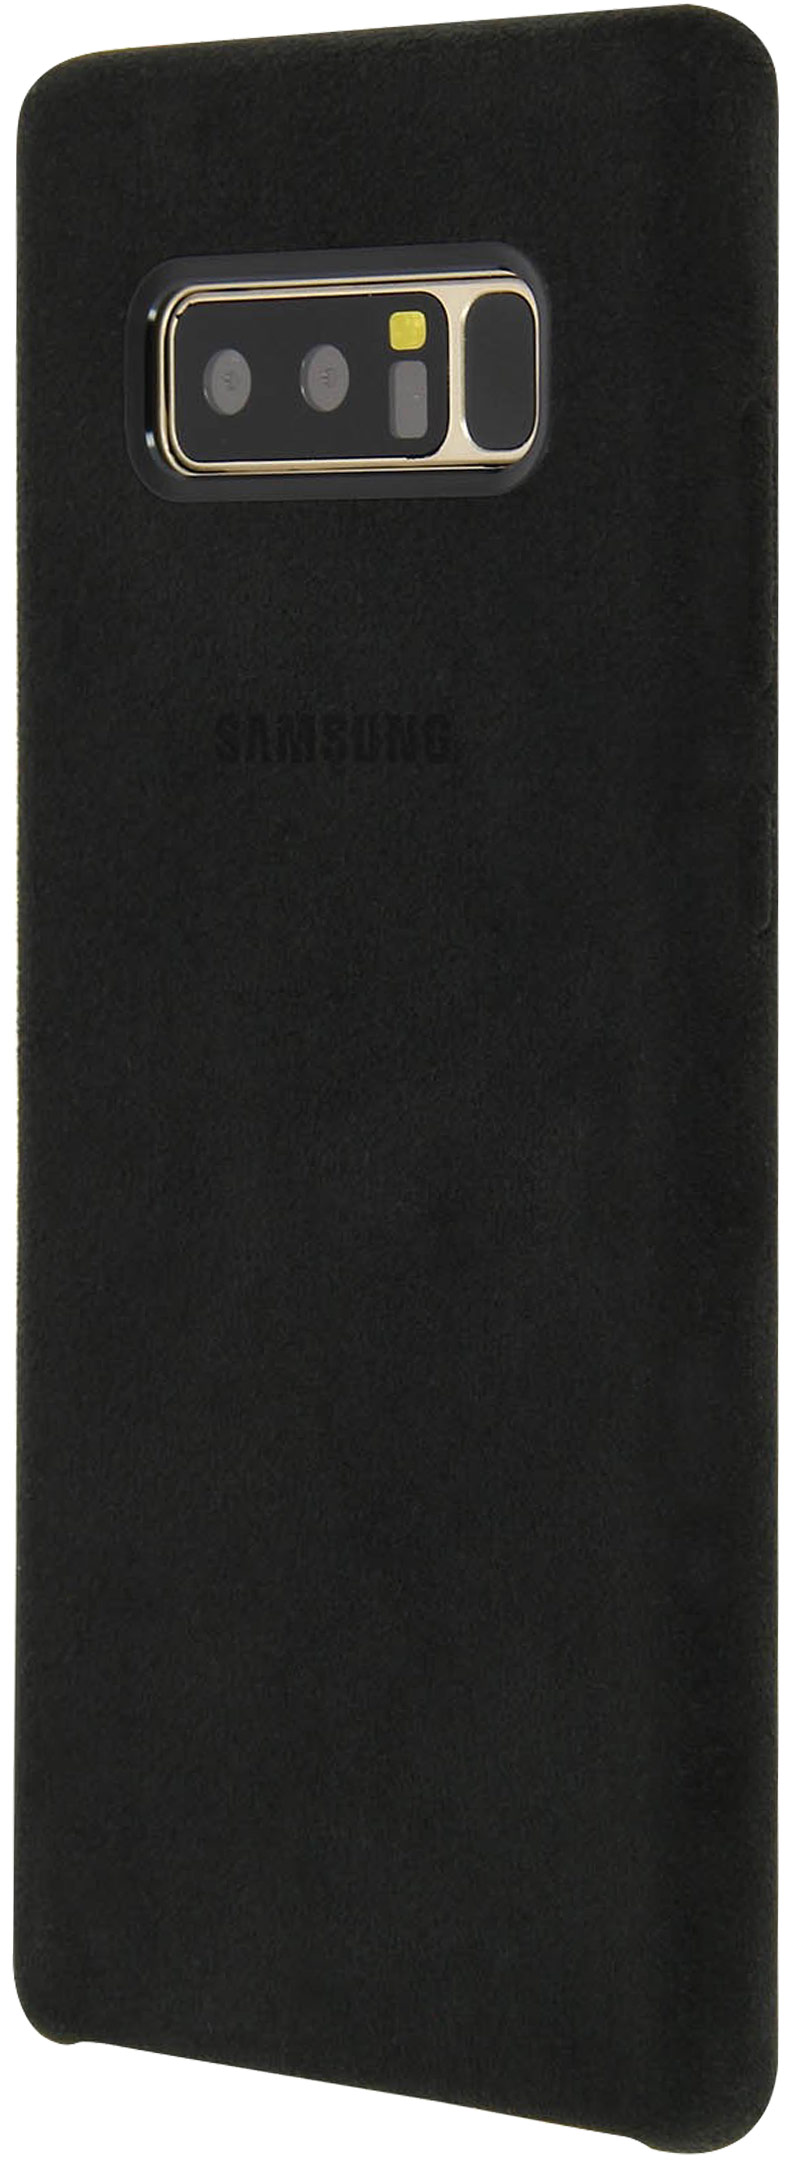 Coque en Alcantara Samsung Galaxy Note8